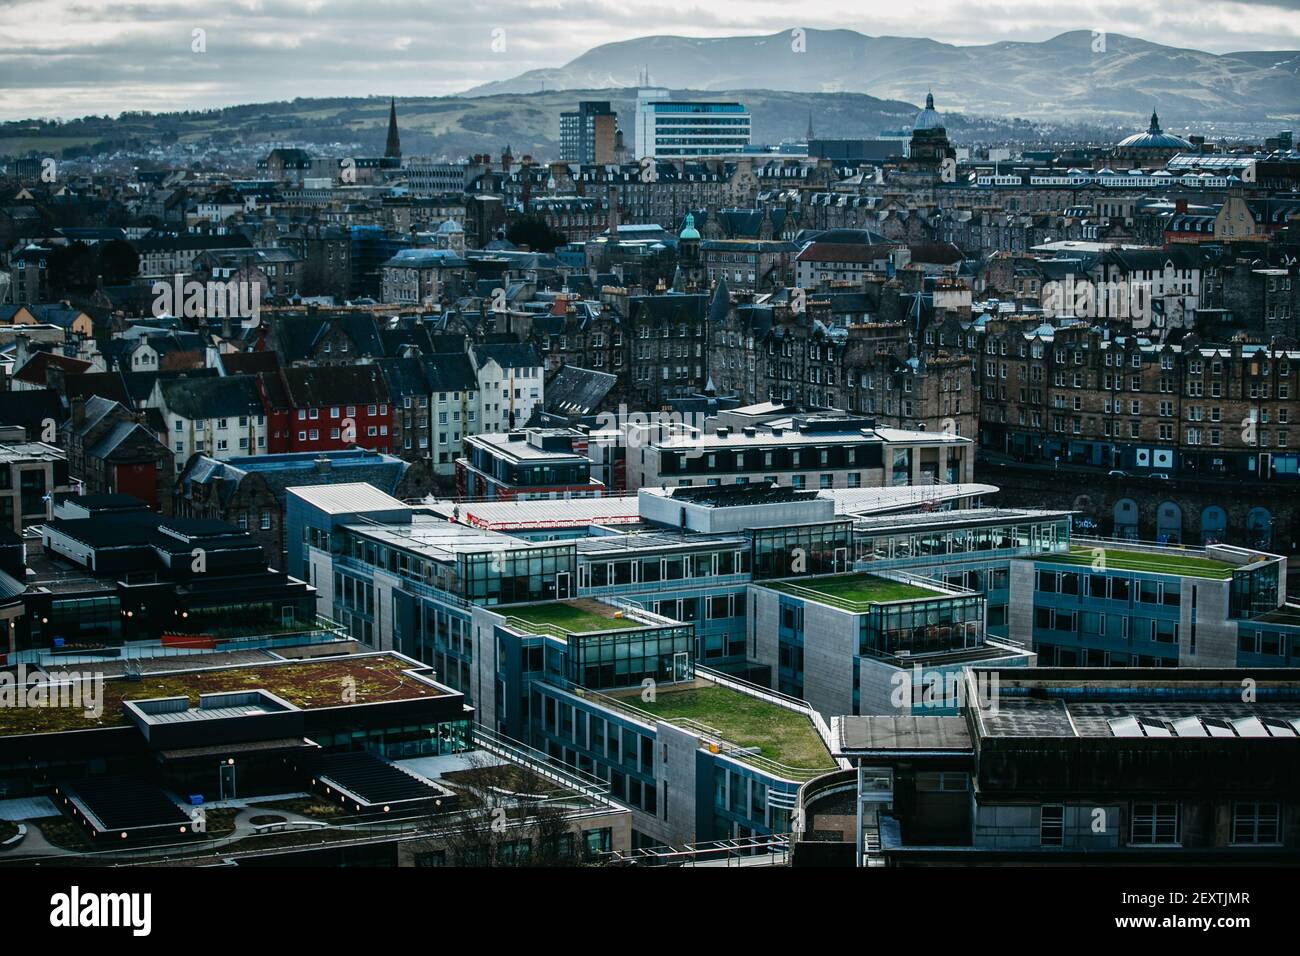 Das Dach der Stadtverwaltung von Edinburgh, Waverley Court, das mit Solarzellen ausgestattet wurde, mit Blick auf die Stadt Edinburgh im Hintergrund. Stockfoto